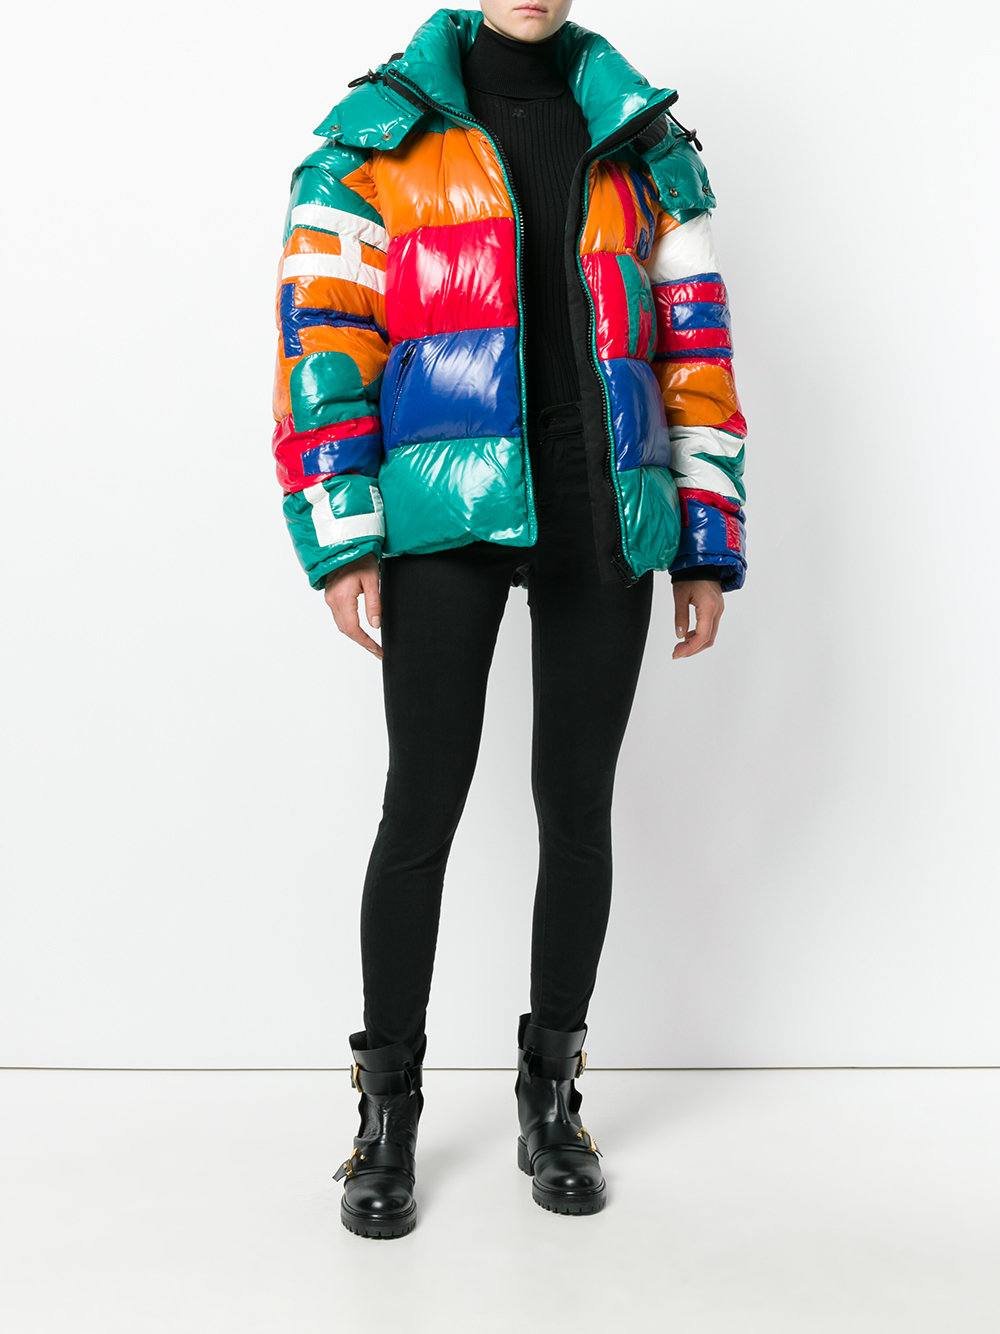 Цветные куртки купить. Разноцветный пуховик. Модные куртки. Разноцветная куртка. Куртка яркая стильная.